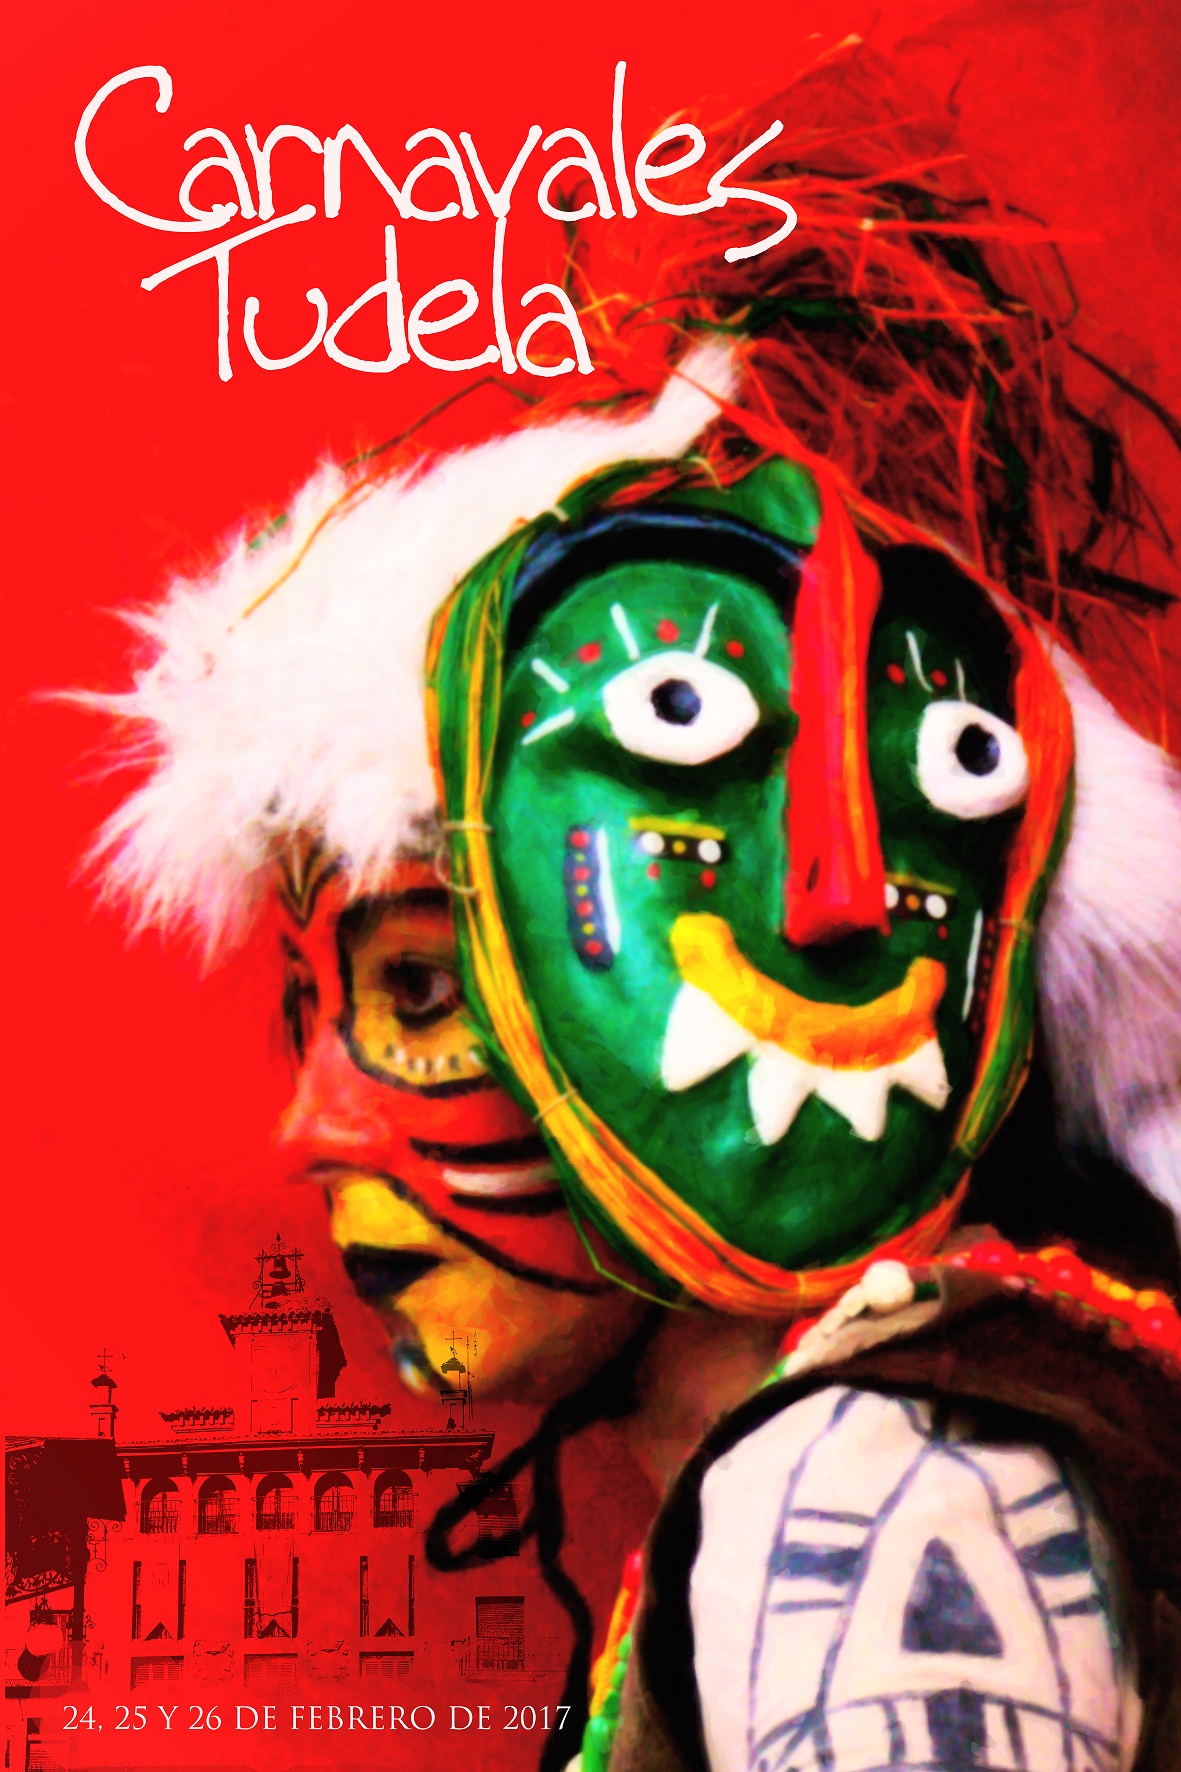 Cartel de los Carnavales de Tudela 2017. Imagen: Ayuntamiento de Tudela.